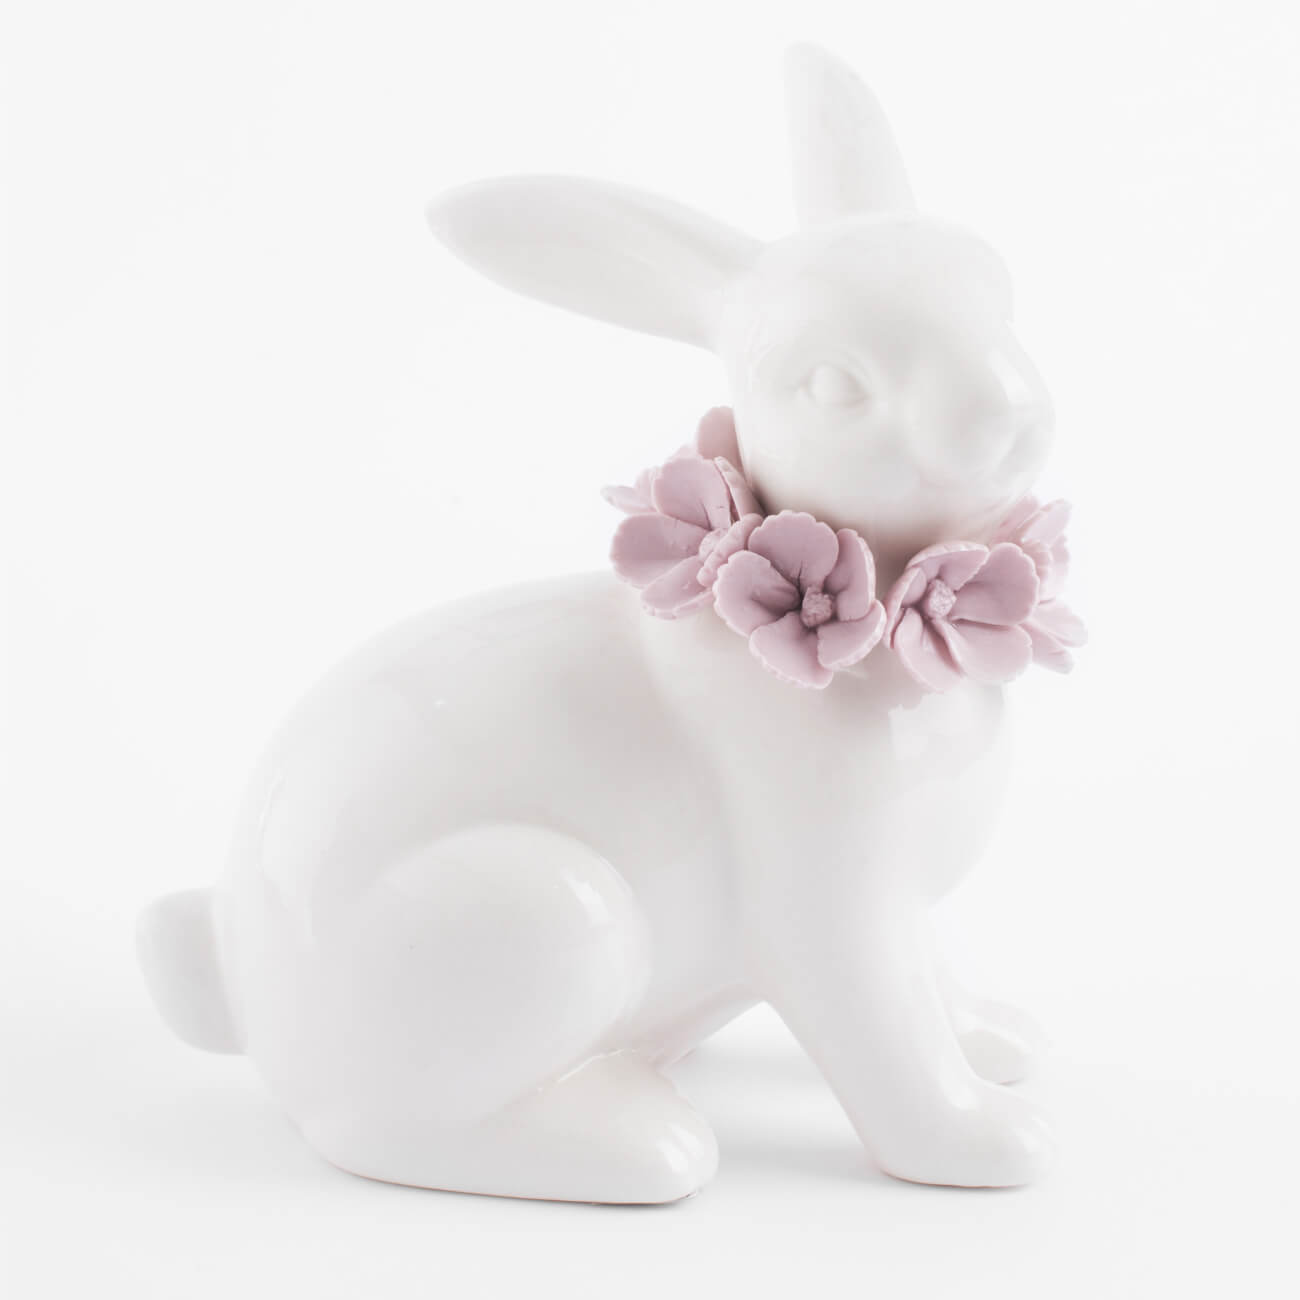 Статуэтка, 15 см, фарфор Porcelain, белая, Кролик в цветах, Pure Easter подставка для яйца 4 см фарфор f белая с золотистым кантом кролик в ах natural easter